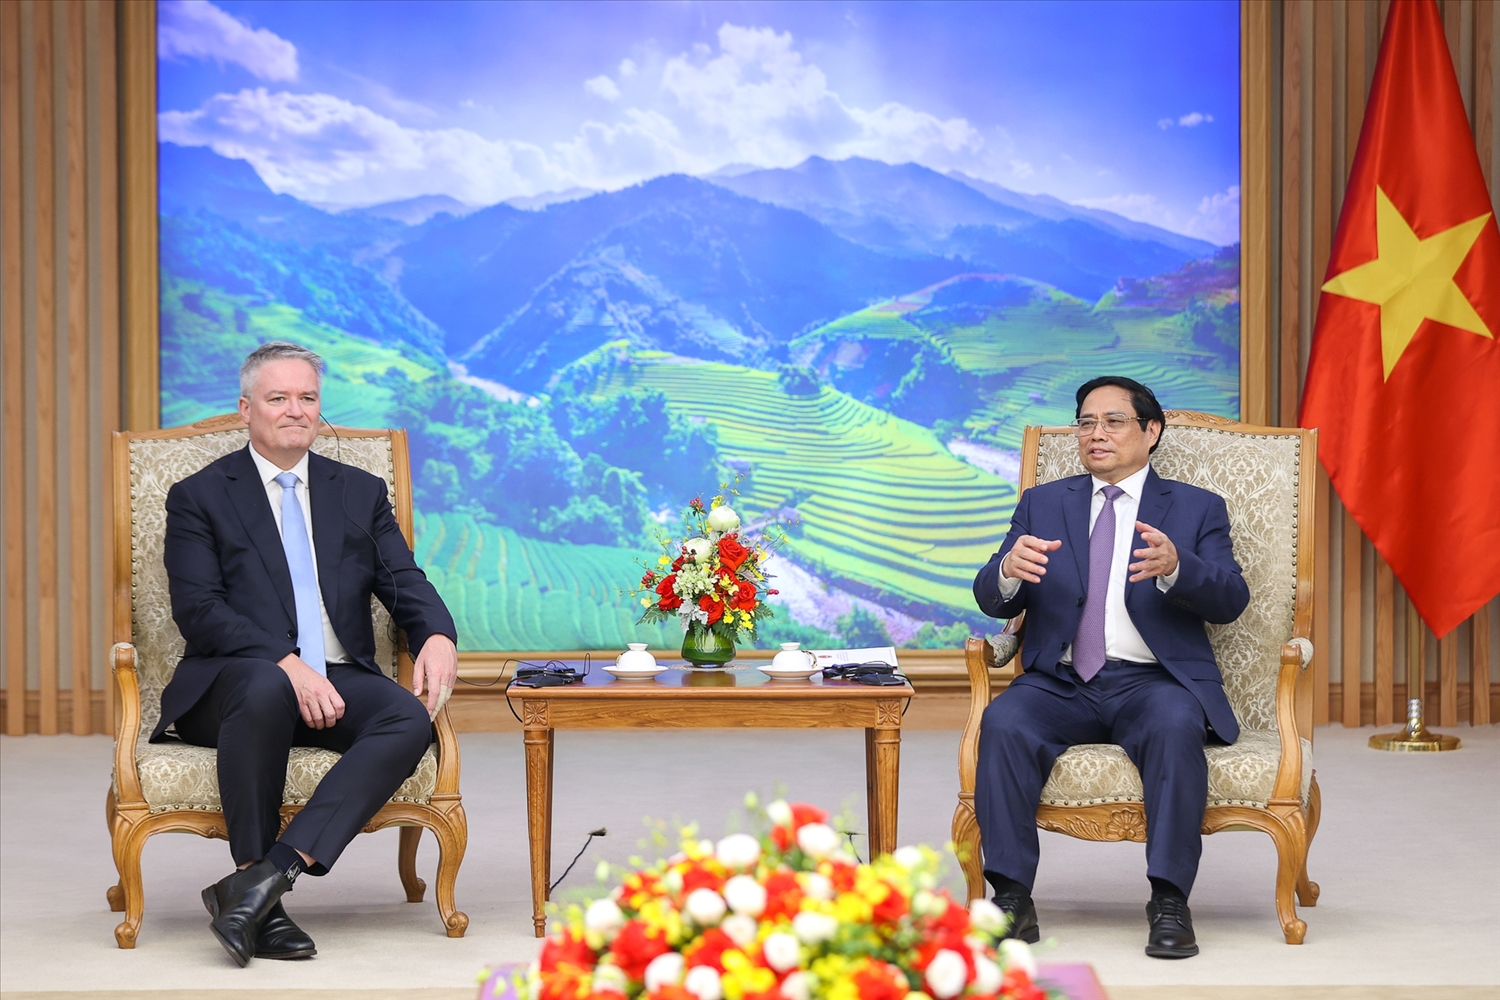 Thủ tướng Chính phủ khẳng định Việt Nam ủng hộ các chính sách hướng đến mục tiêu phát triển chung của nhân loại, vì lợi ích của người dân, công bằng và tiến bộ xã hội - Ảnh: VGP/Nhật Bắc